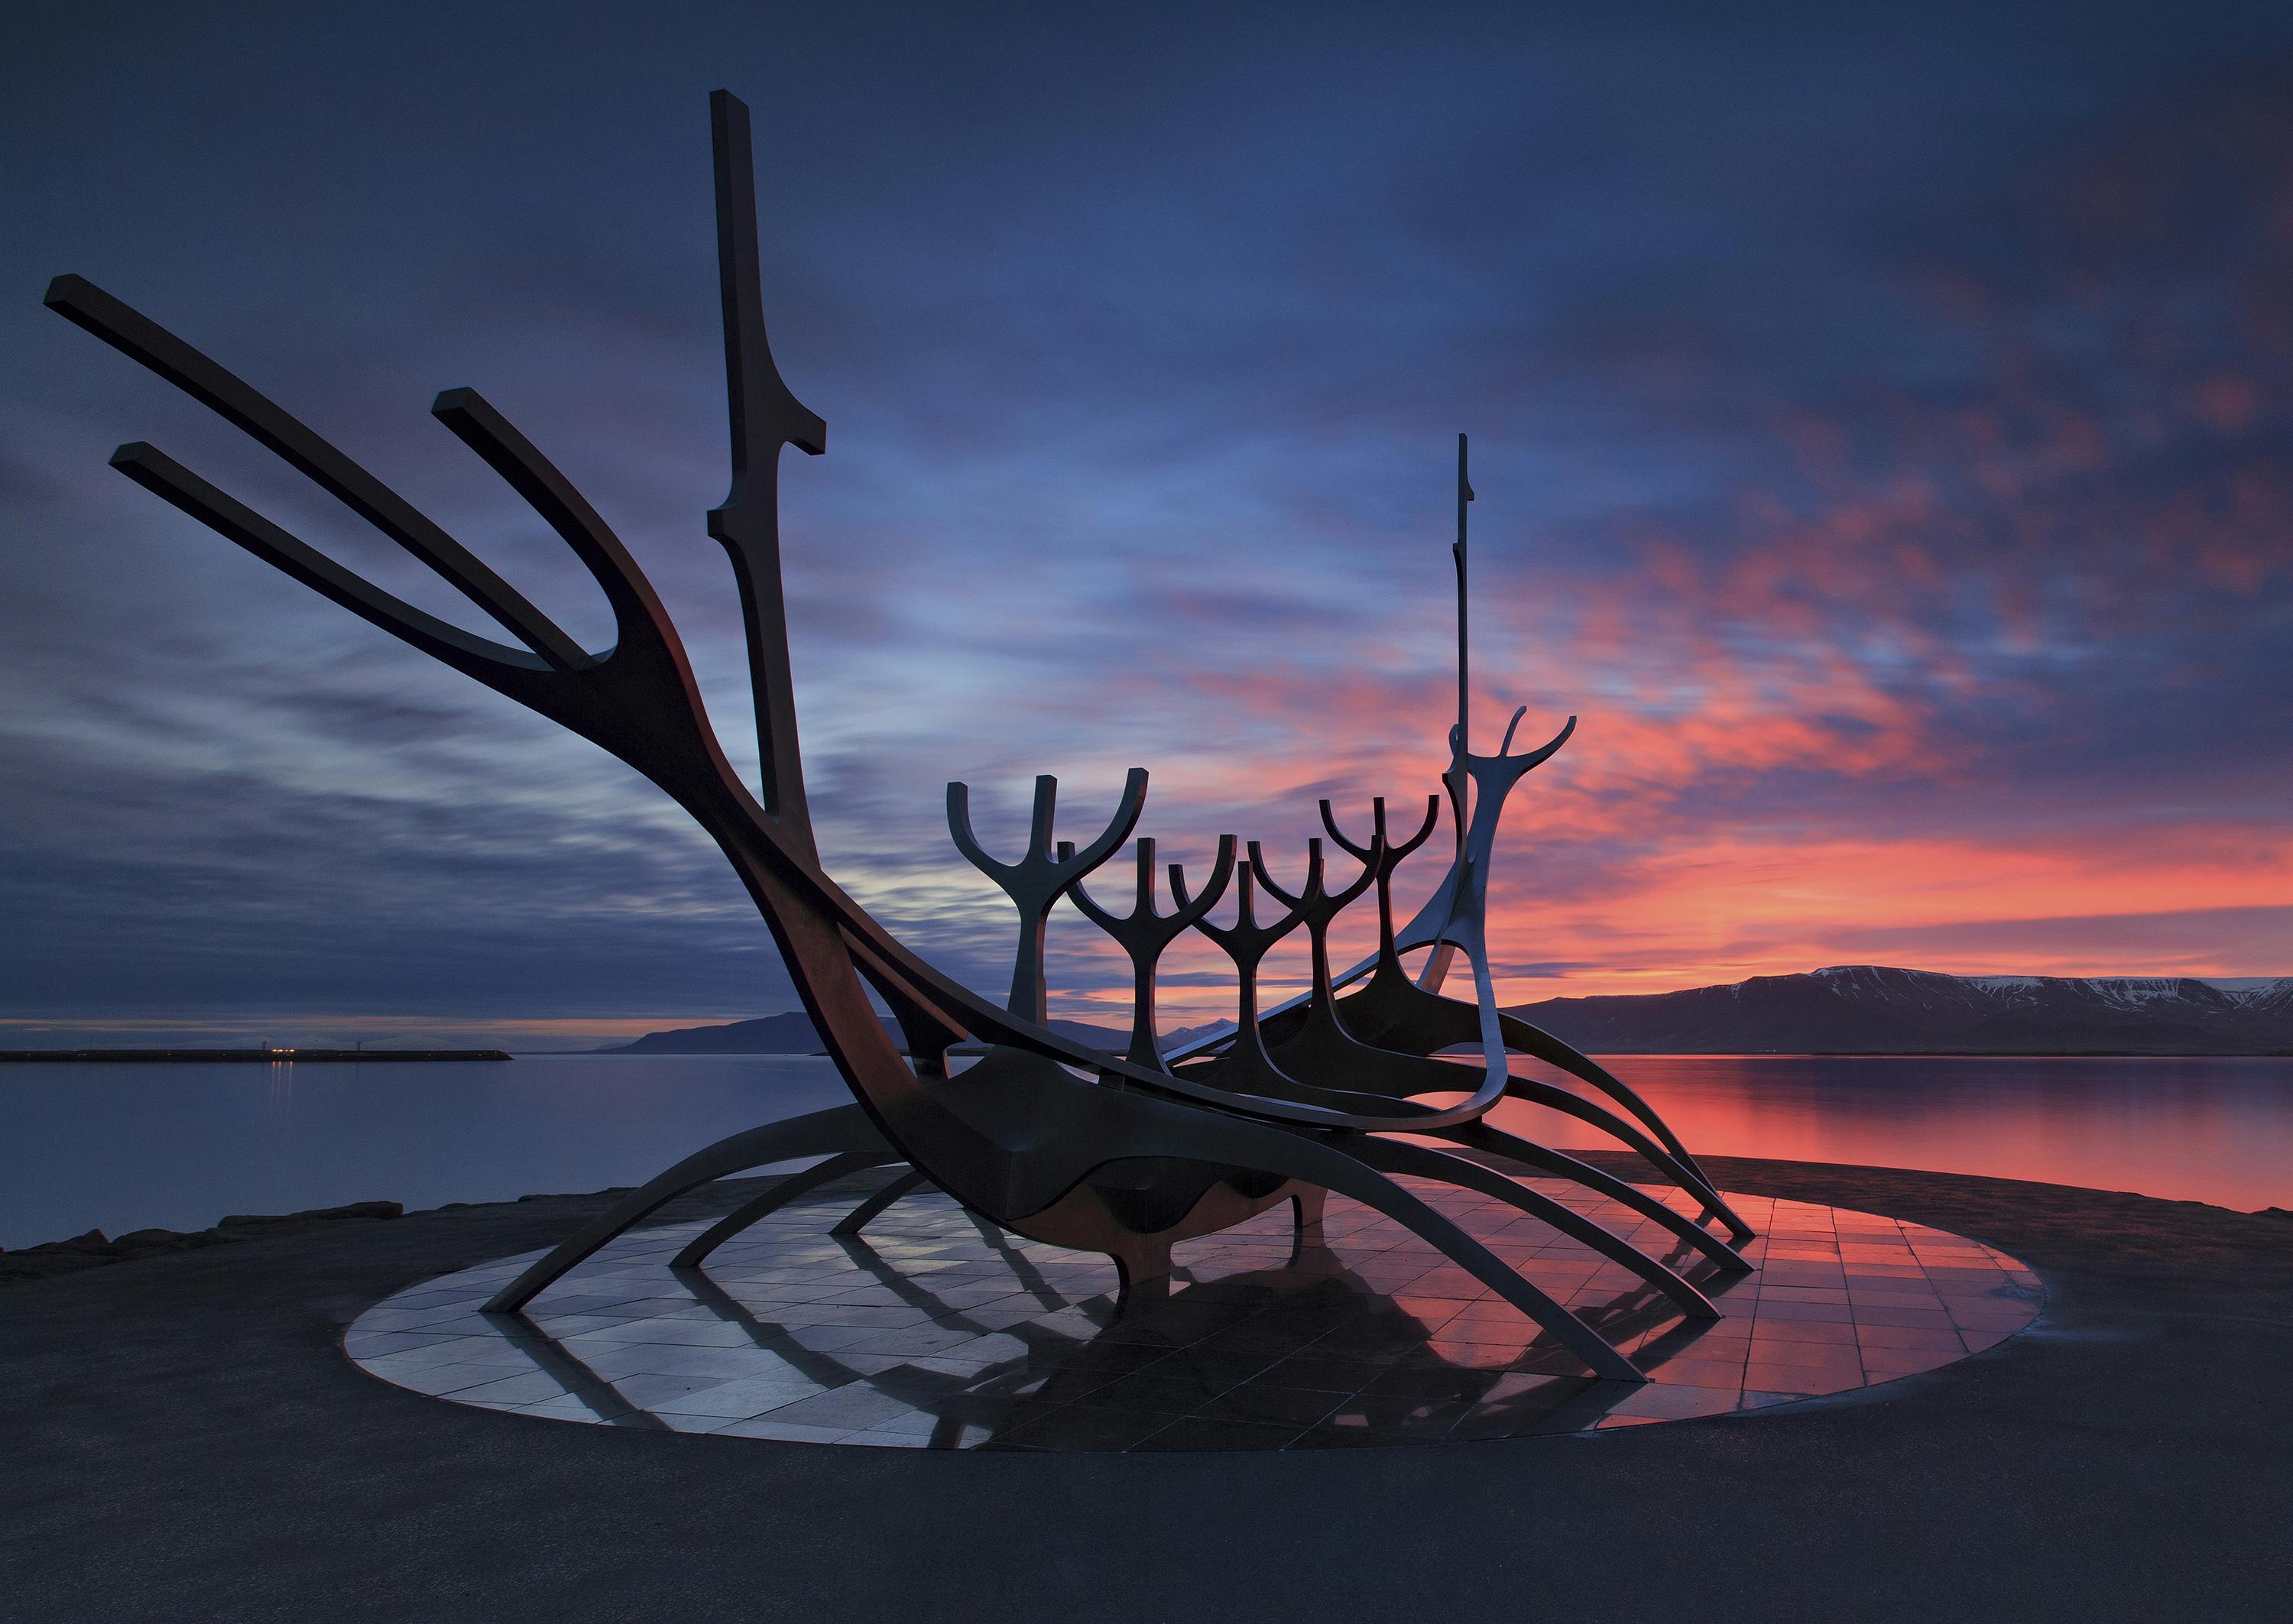 La sculpture Sun Voyager au coucher du soleil. Cette magnifique œuvre d'art se trouve à côté de la salle de concert Harpa, dans le centre-ville de Reykjavík.